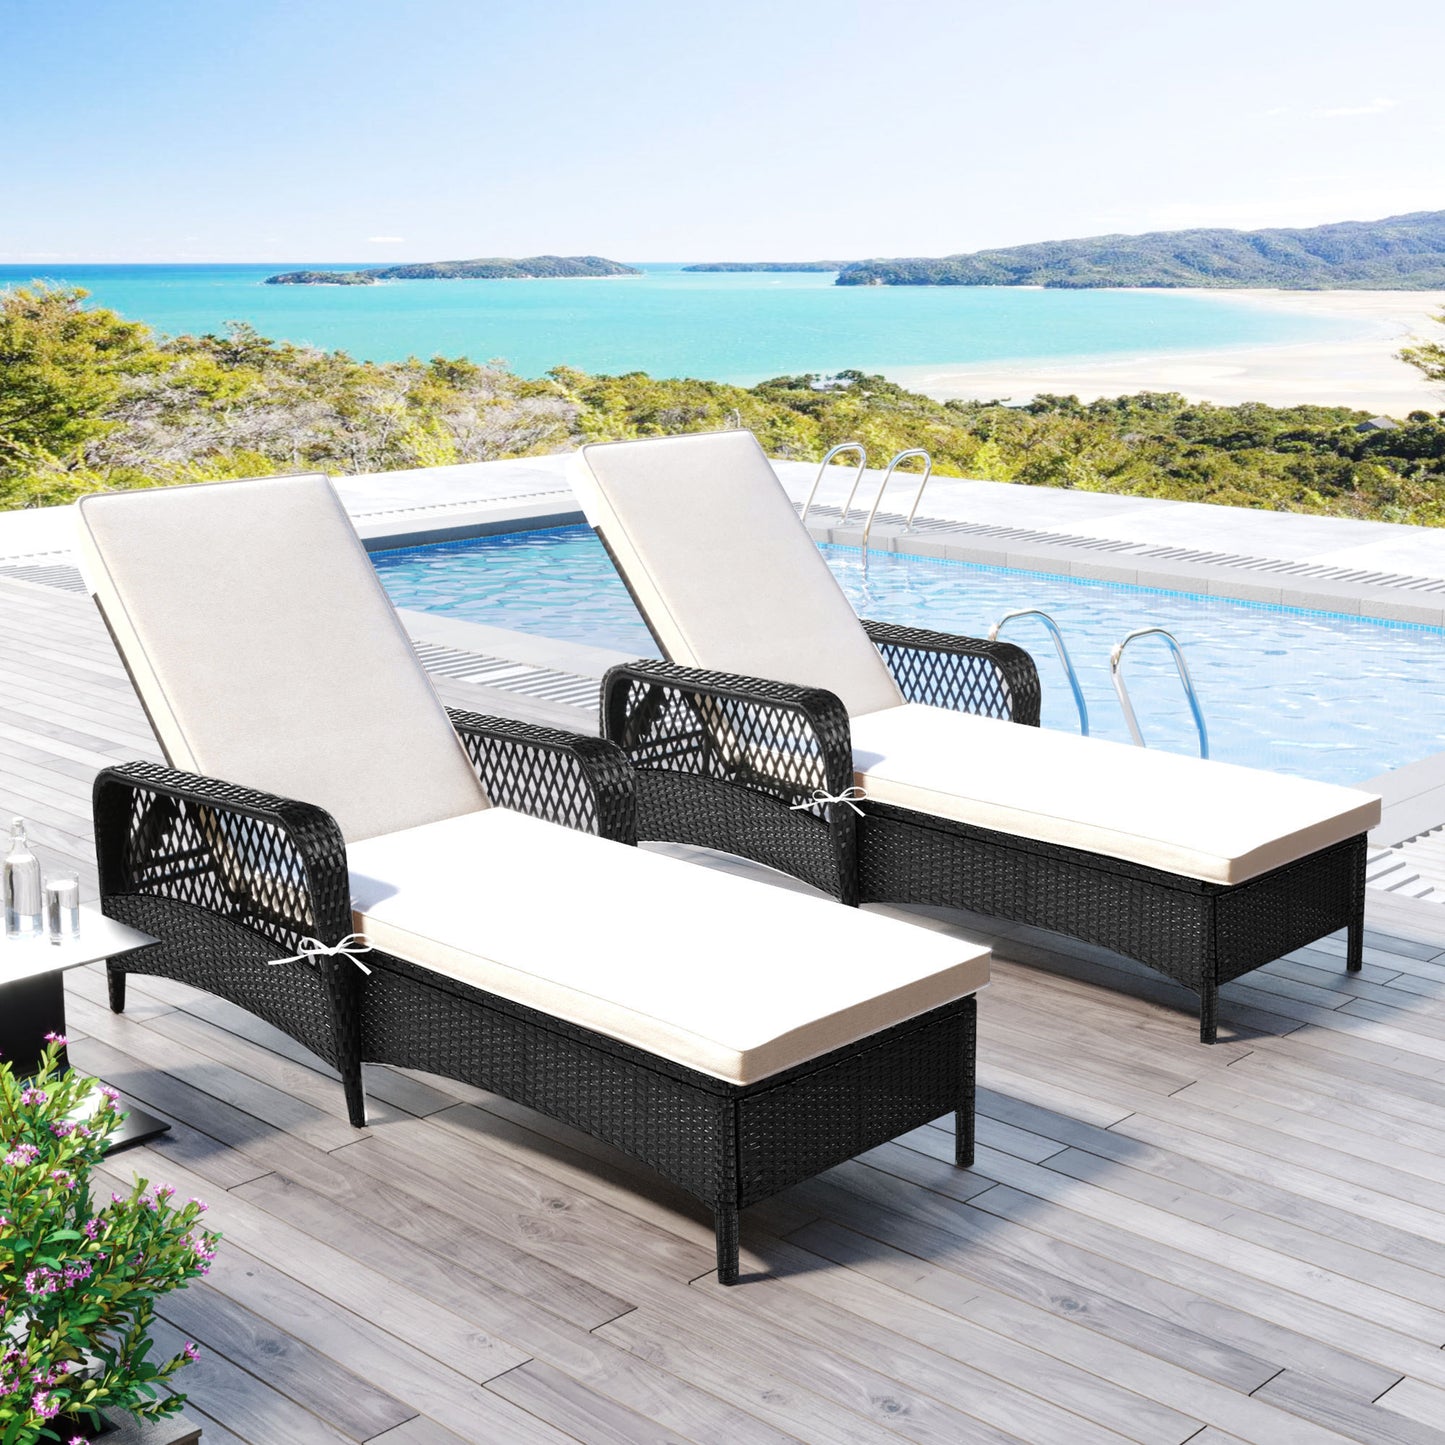 GO Outdoor patio pool PE rattan wicker chair wicker sun lounger, Adjustable backrest, beige cushion, Black wicker (2 sets)